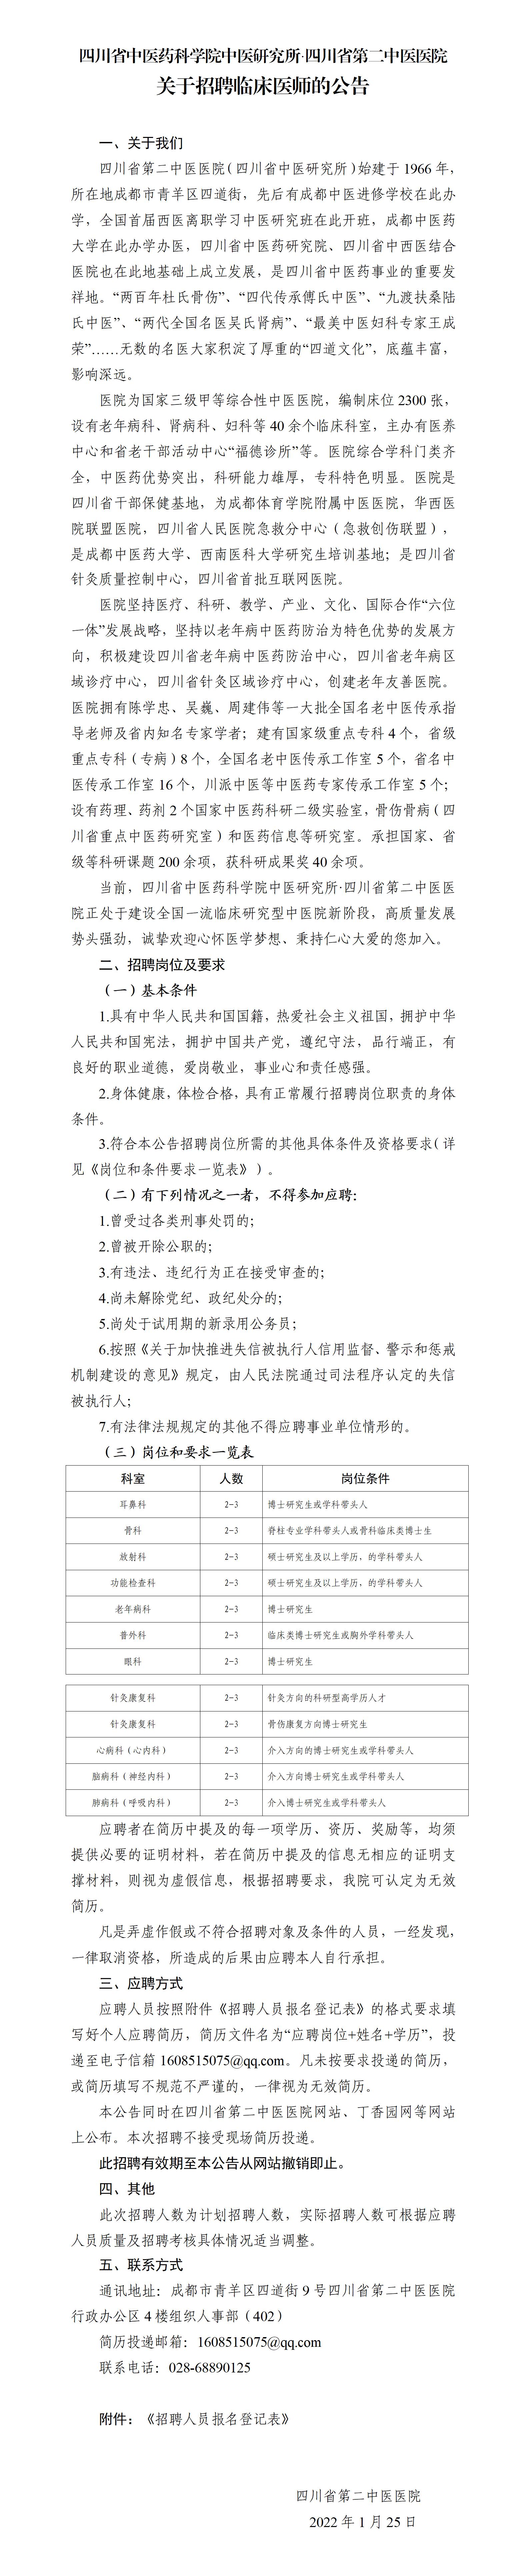 四川省第二中医医院 关于招聘临床医师的公告